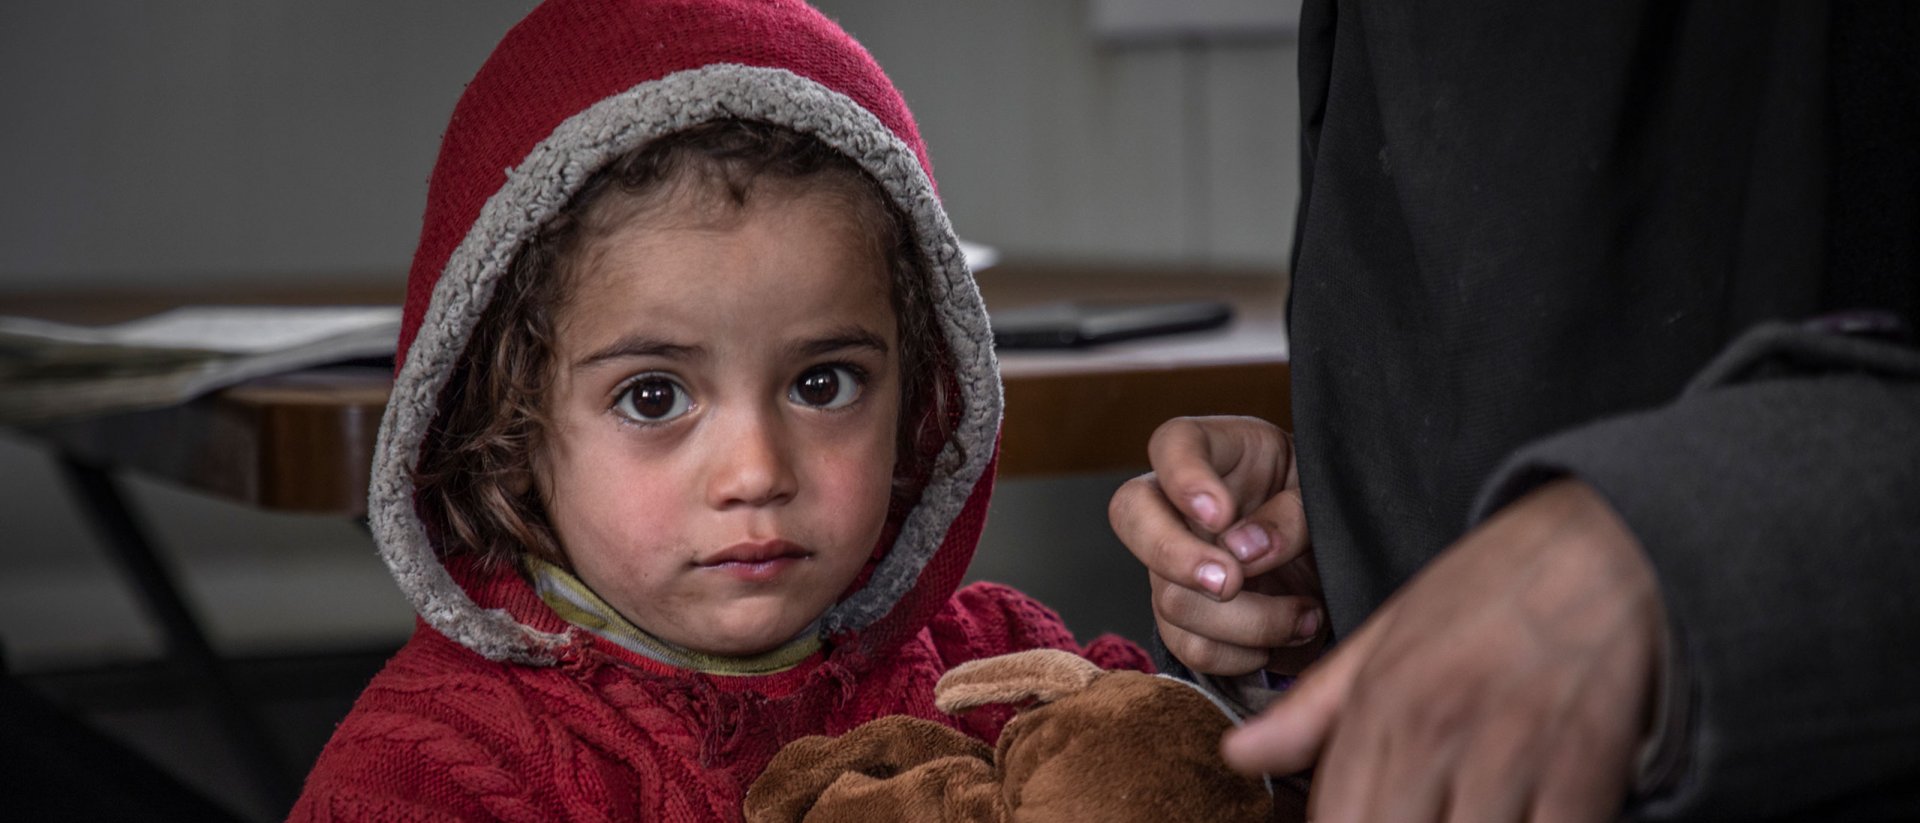 Se acerca el frío y pone en peligro la vida de miles de niños sirios